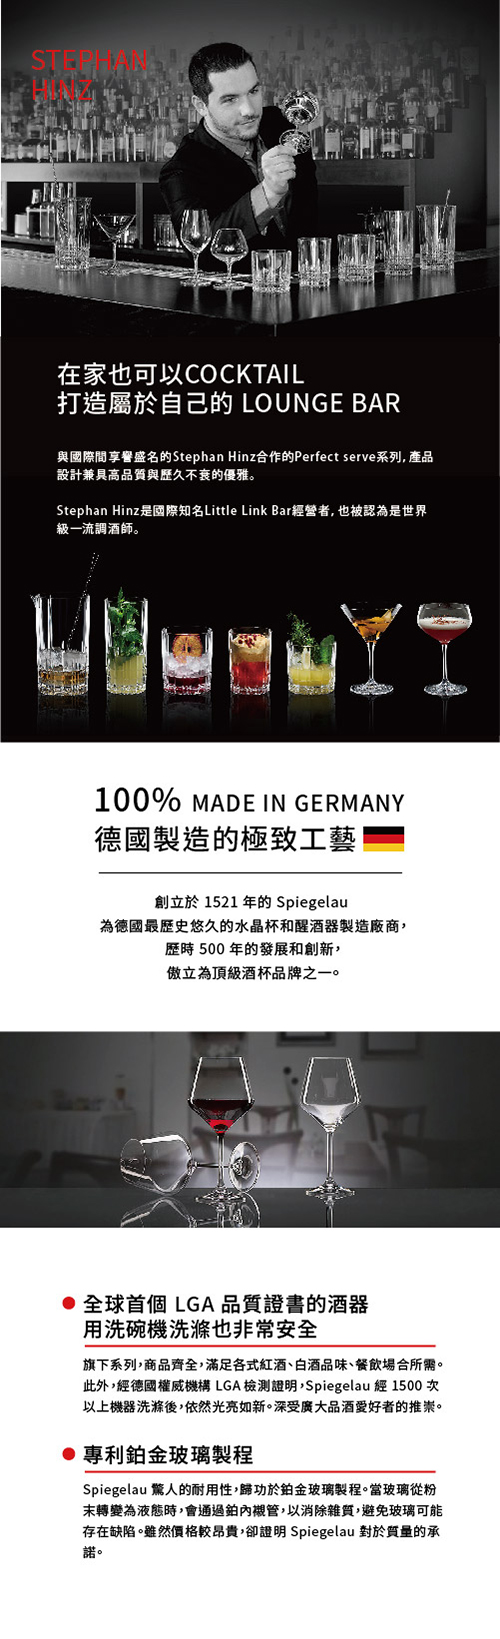 【3/23~3/29精選品牌8折優惠】德國Spiegelau Perfect Serve 完美系列 雞尾酒杯4件酒杯組